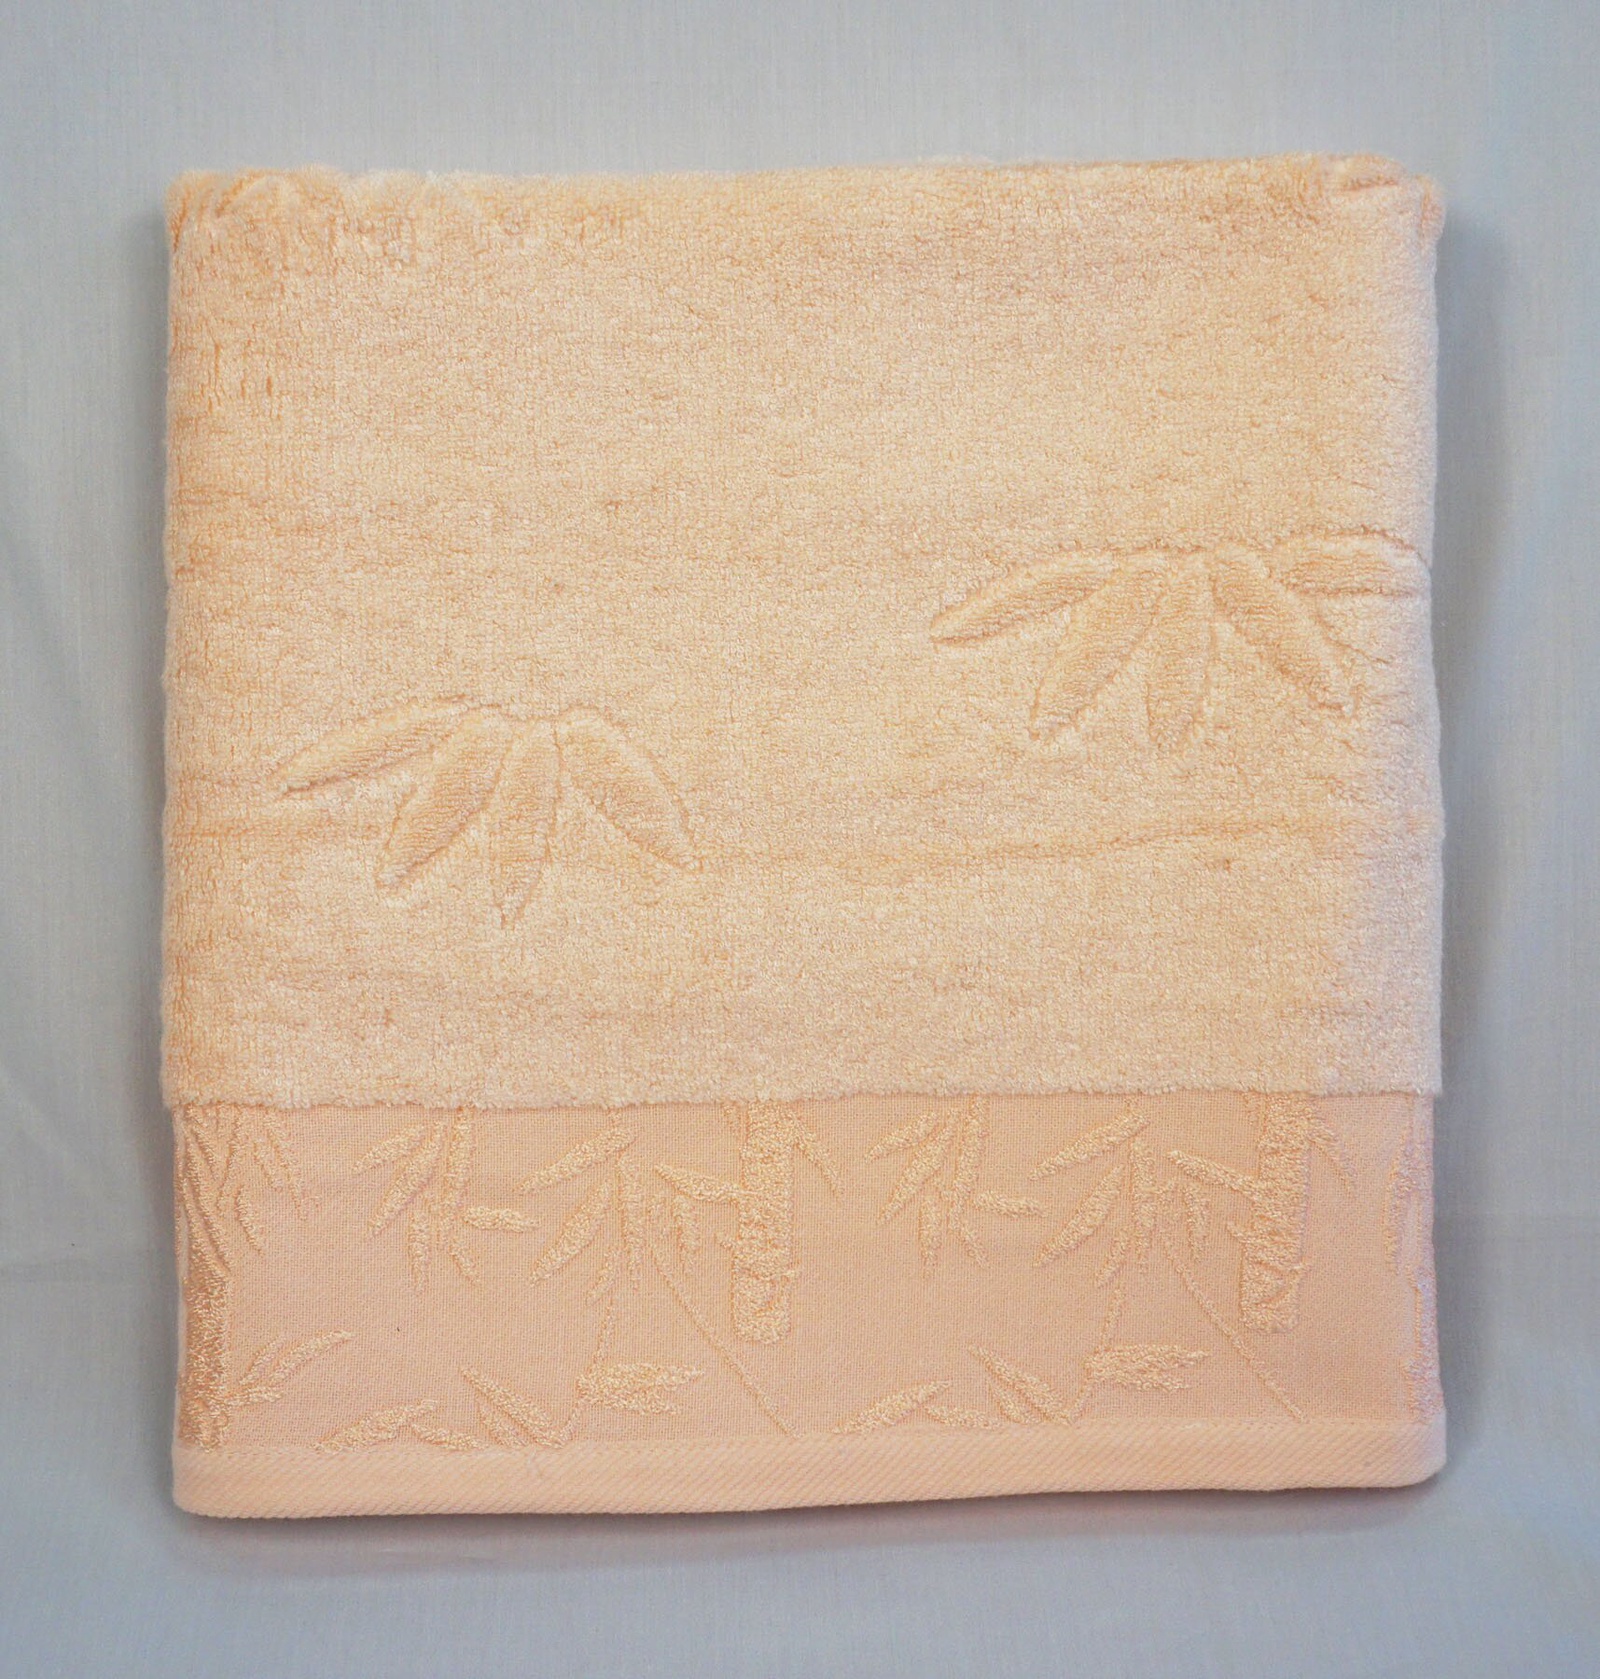 Полотенце банное Grand Stil Бамбук, размер 65*135, GS-H03b, оранжевый